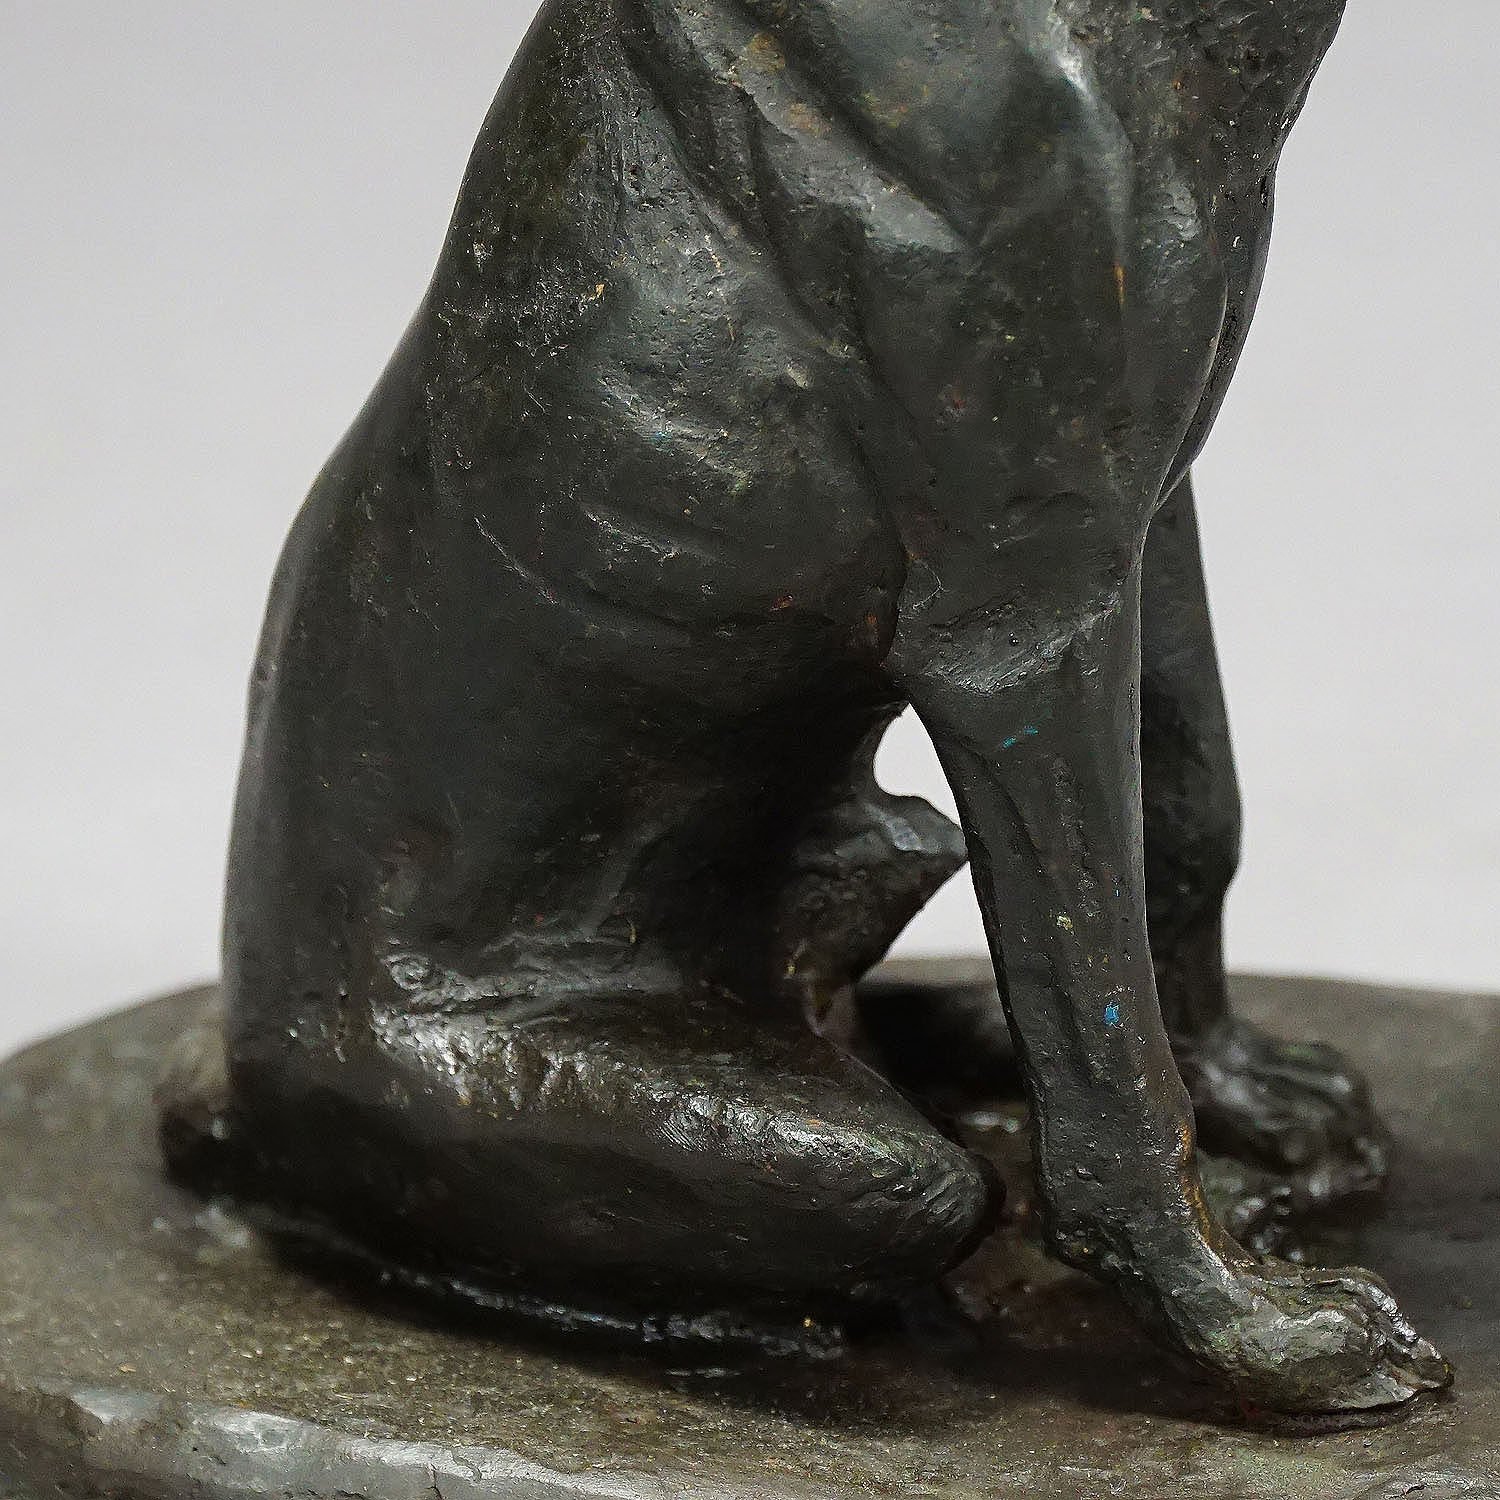 Antique Artistic Bronze Cast of a Retriver Dog, Germany ca. 1900